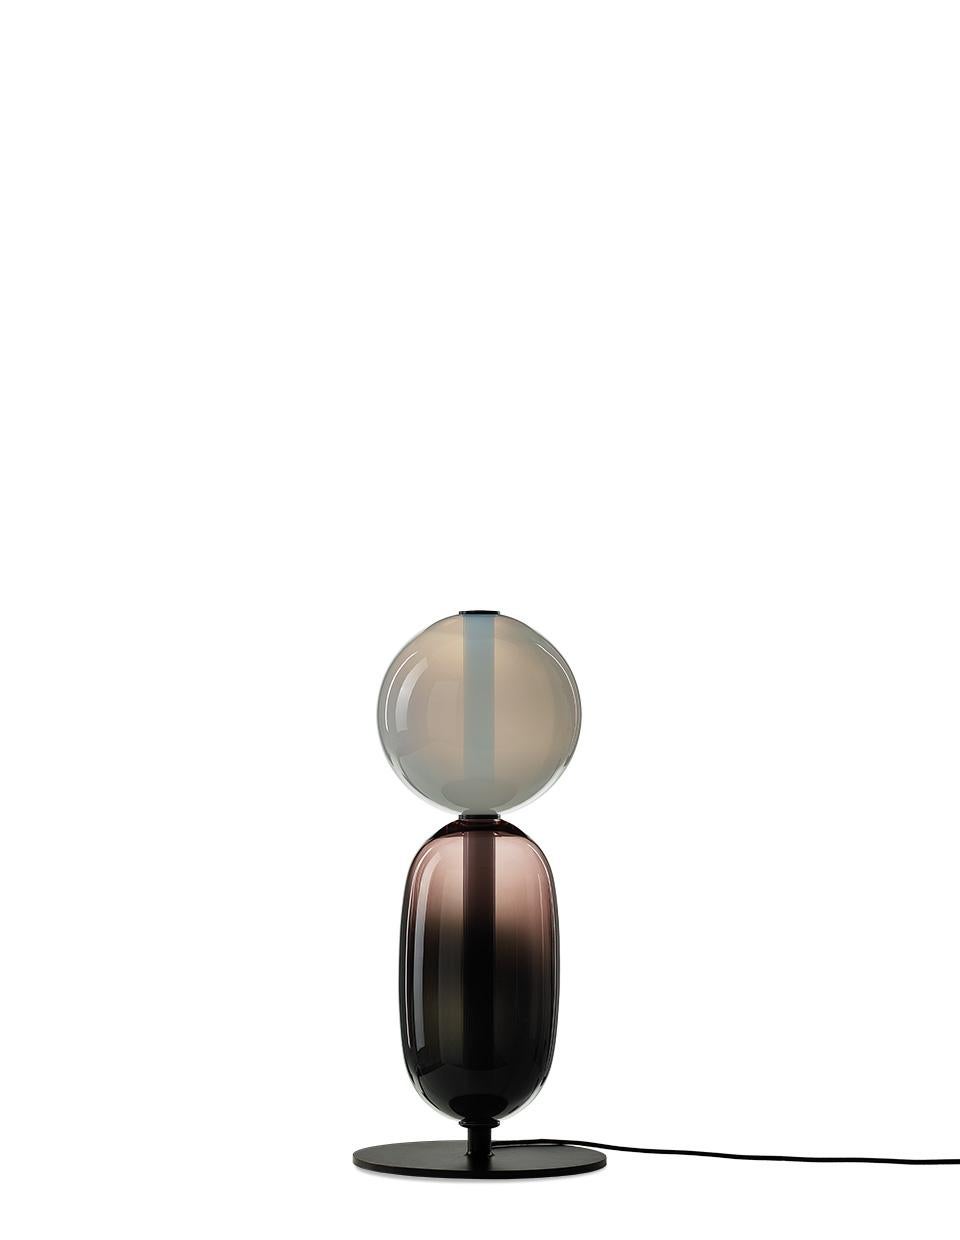 Zeitgenössische Stehleuchte aus geblasenem Kristallglas - pebbles von Boris Klimek für Bomma

Kieselsteine erinnern an besondere Momente oder Lieblingsorte. Ihre vielfältigen Formen und Farben haben BOMMA zu einer spielerischen Kollektion